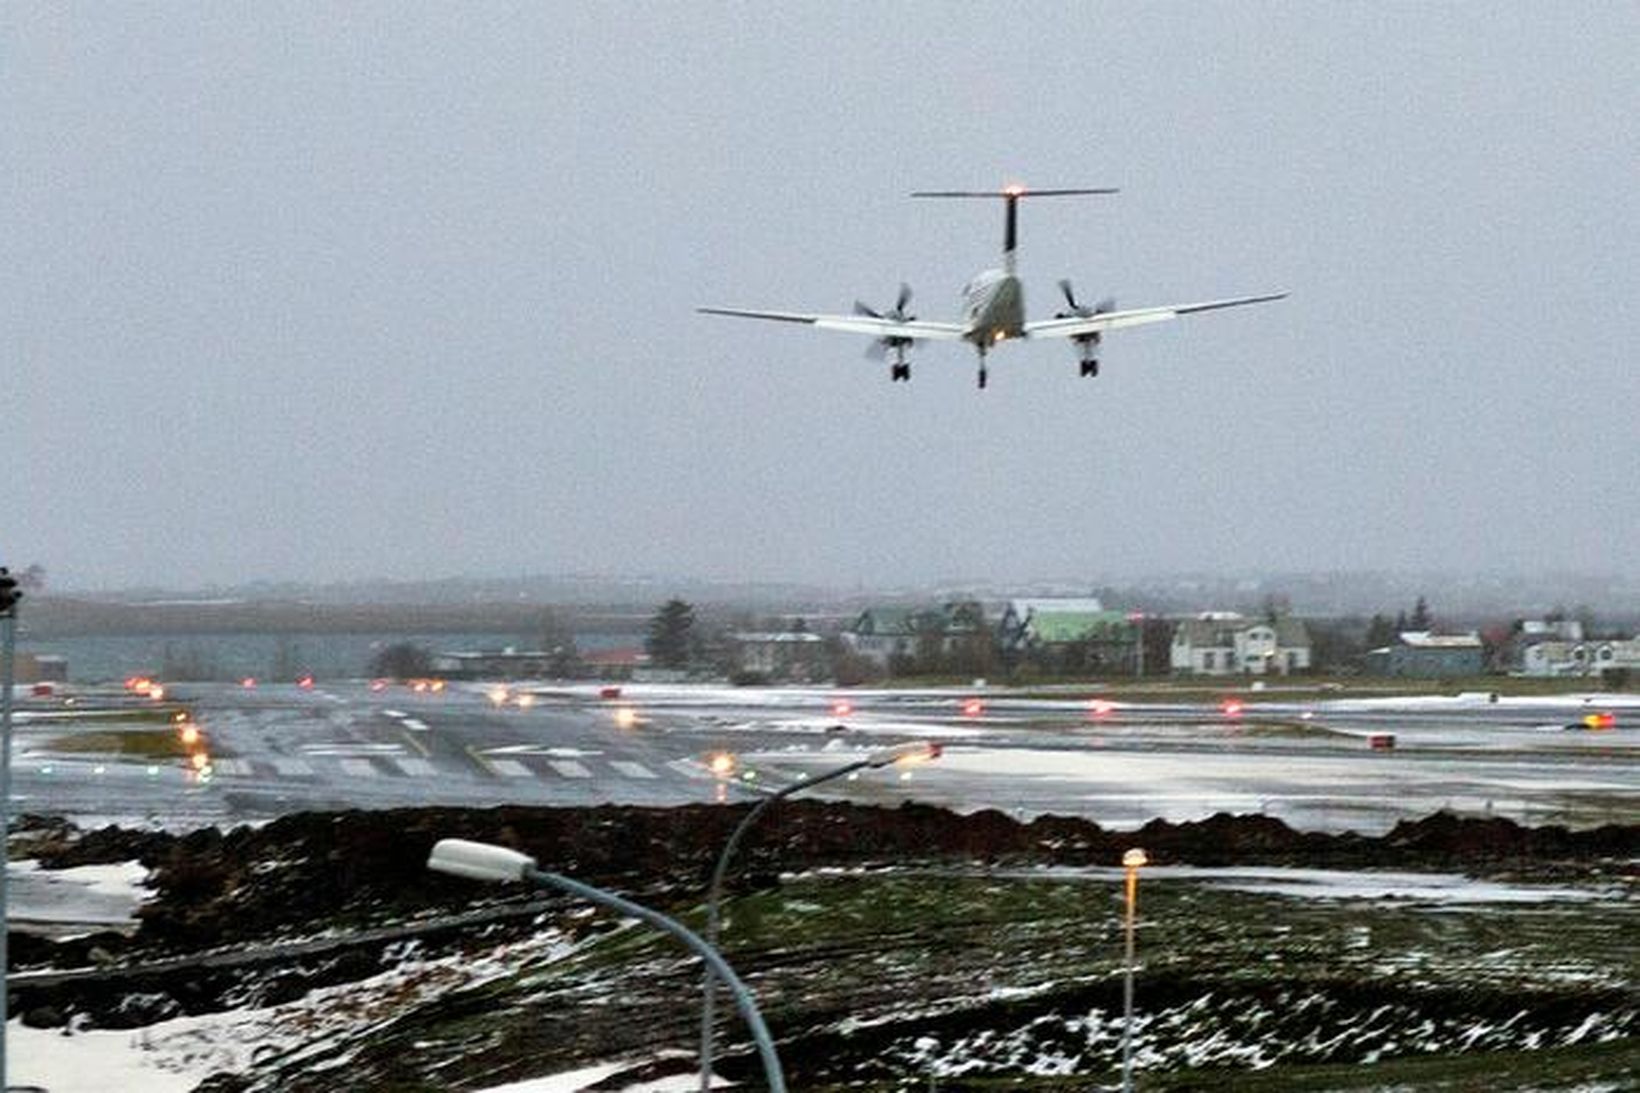 Sjúkraflug Mýflugs að lenda á neyðarbraut Reykjavíkurflugvallar.